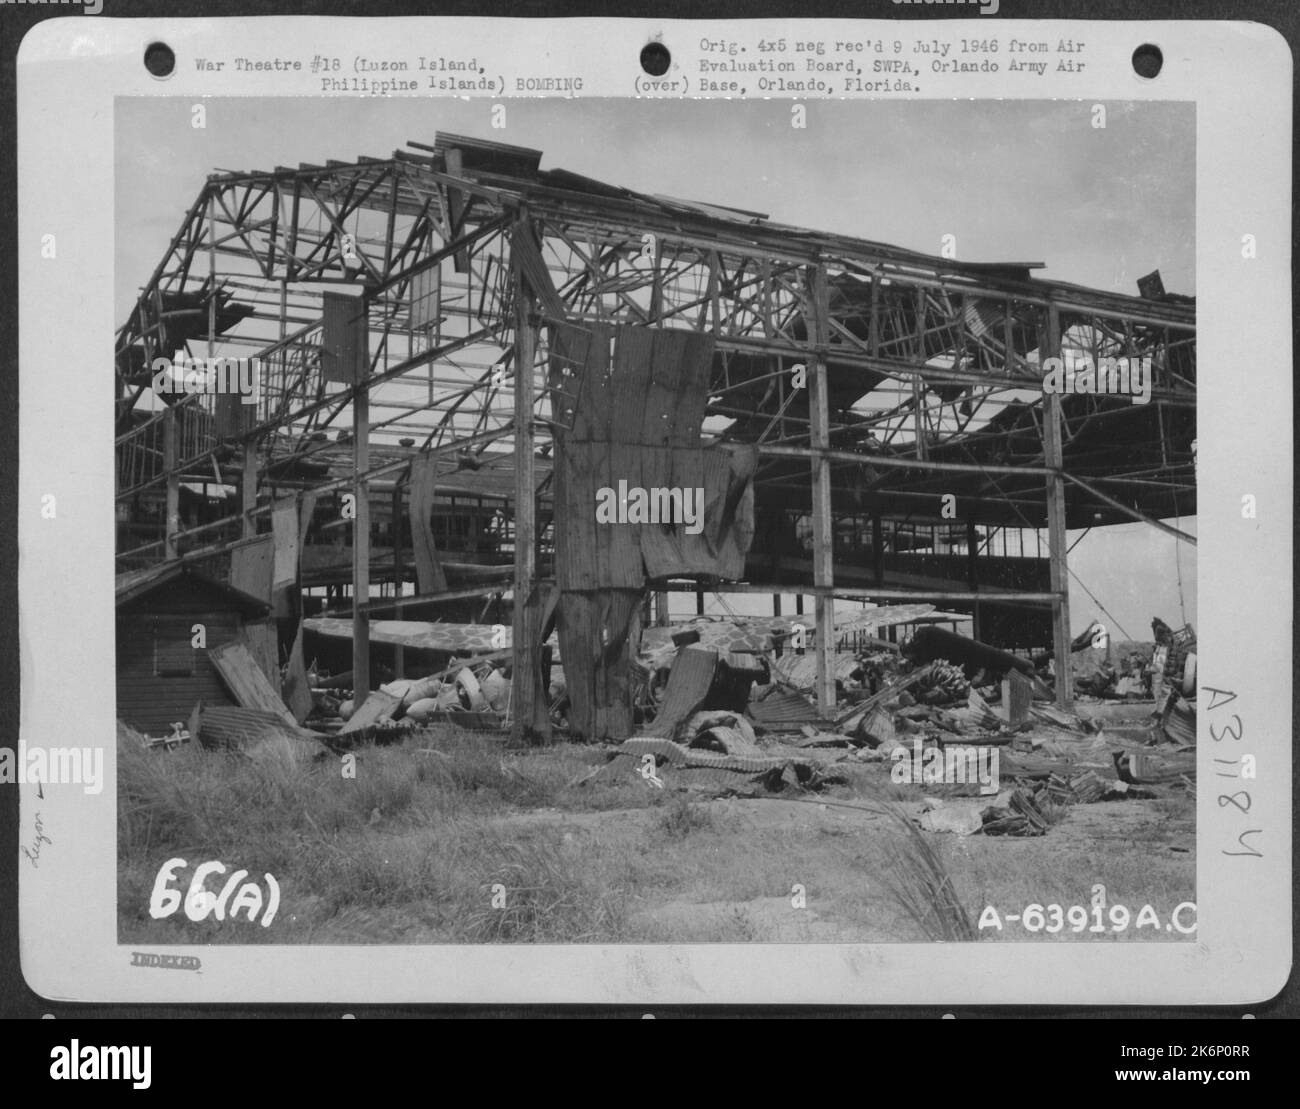 Diese Hangars wurden von Einheiten der American Air Forces, Luzon Island, Philippine Islands, 1945, schwer bombardiert. Stockfoto